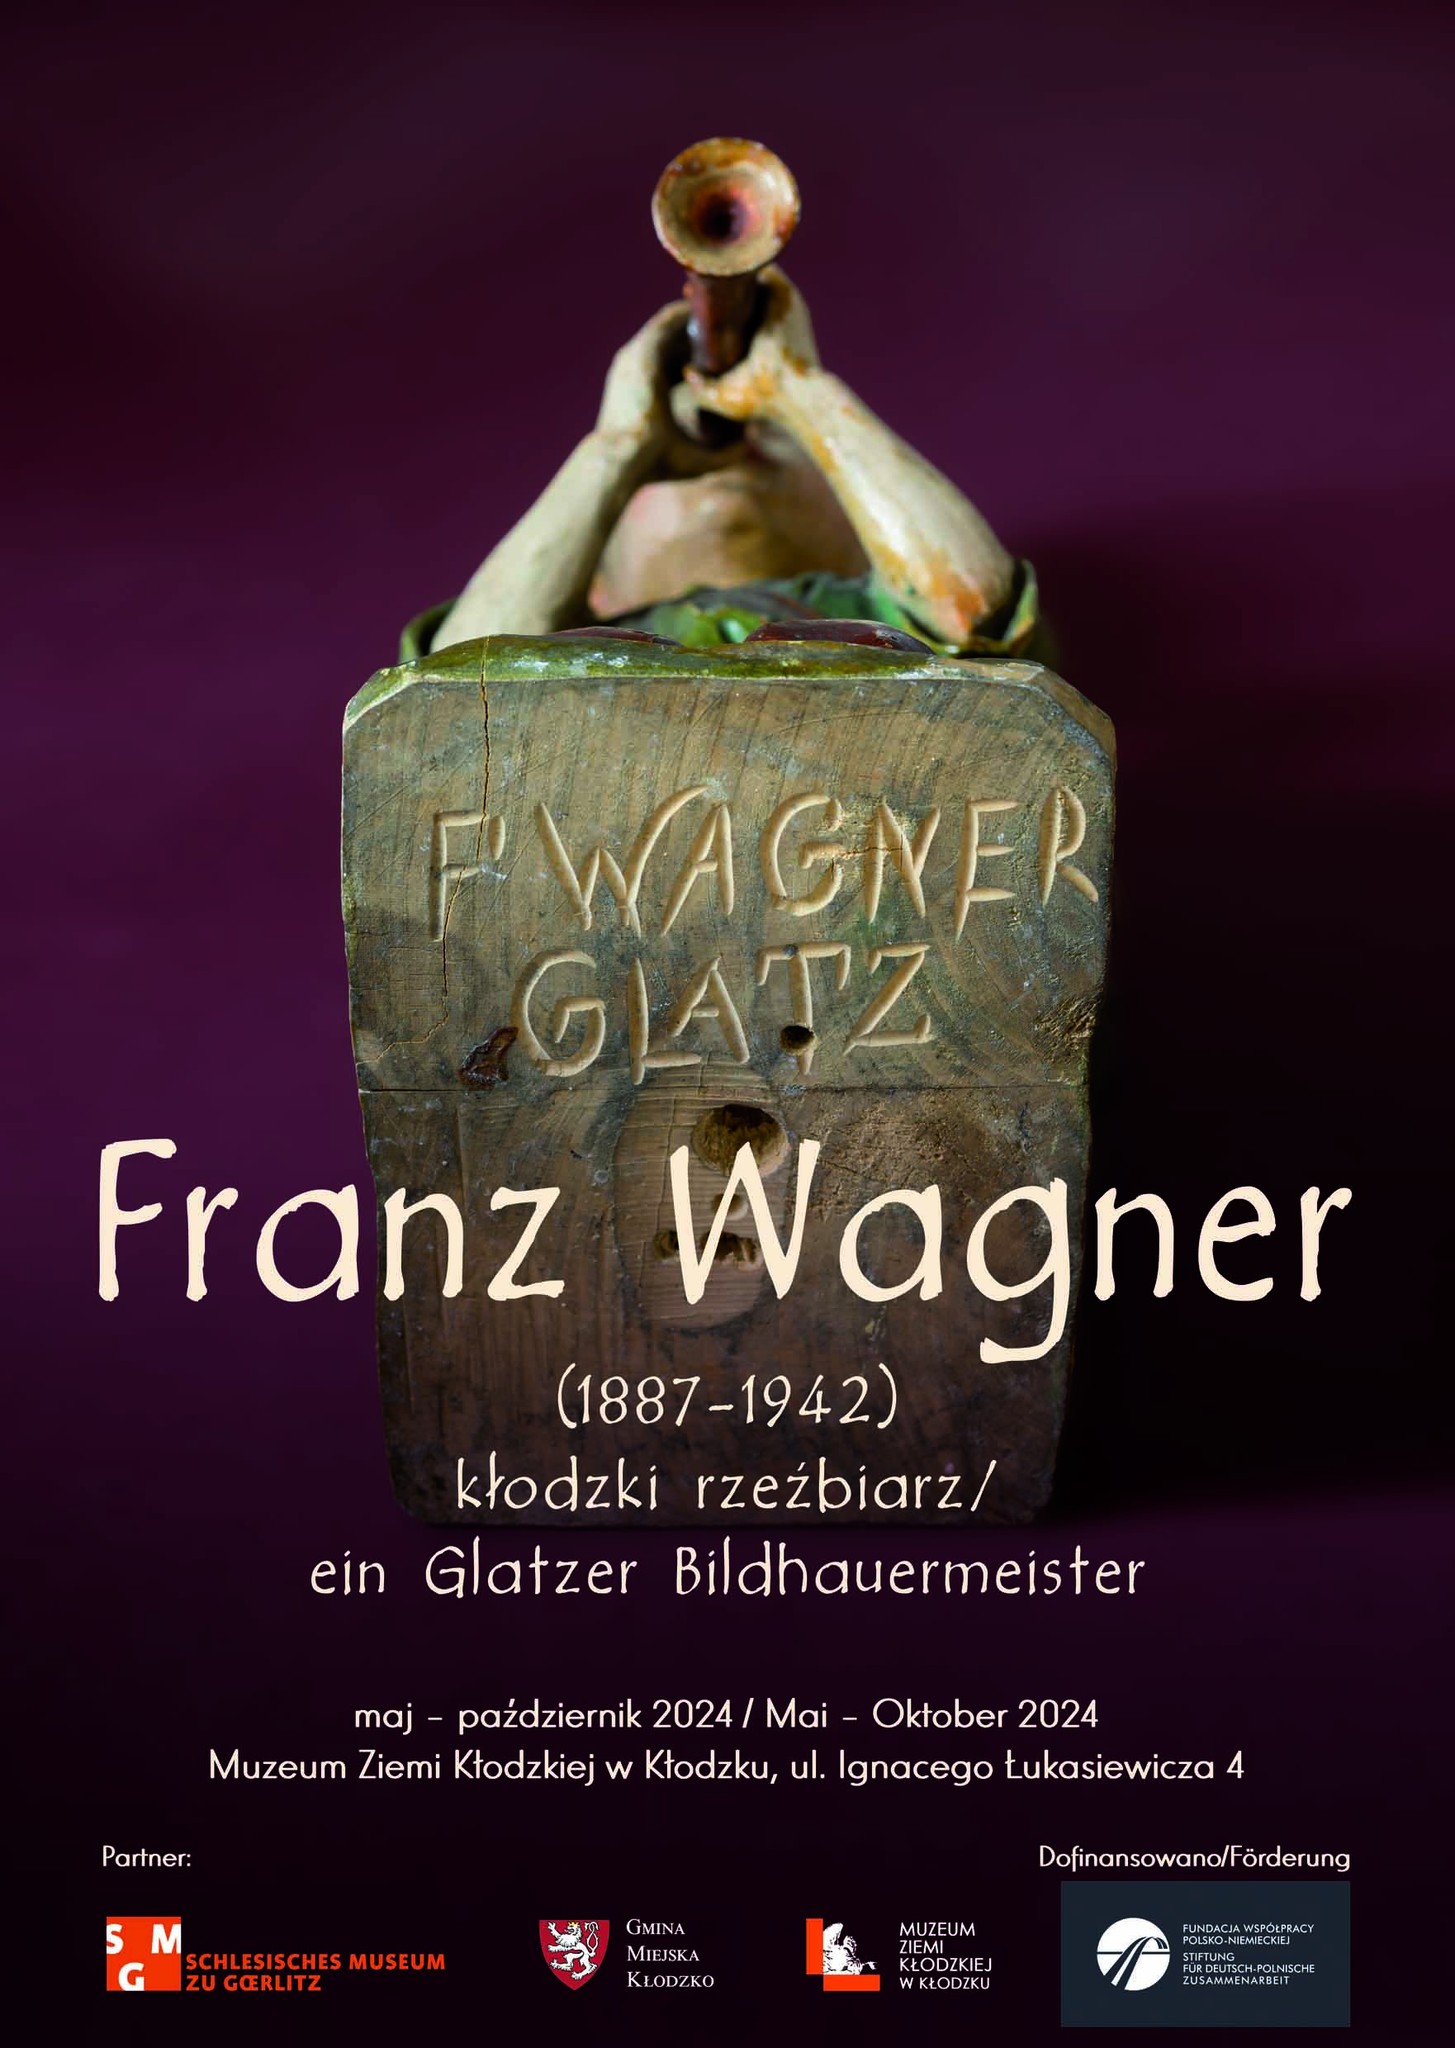 Glatzer Bildhauermeister Franz Wagner (1887-1942)